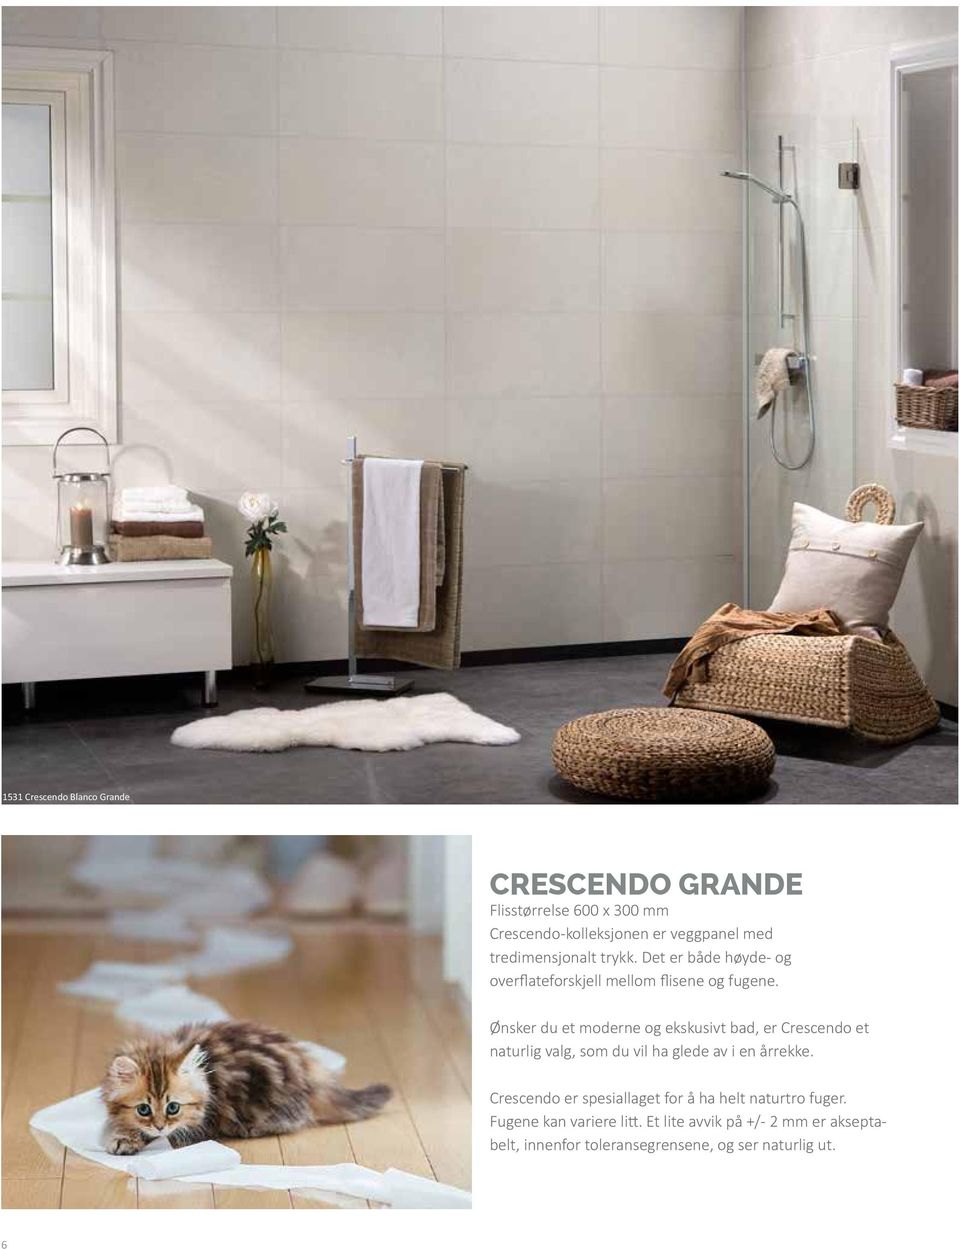 Ønsker du et moderne og ekskusivt bad, er Crescendo et naturlig valg, som du vil ha glede av i en årrekke.